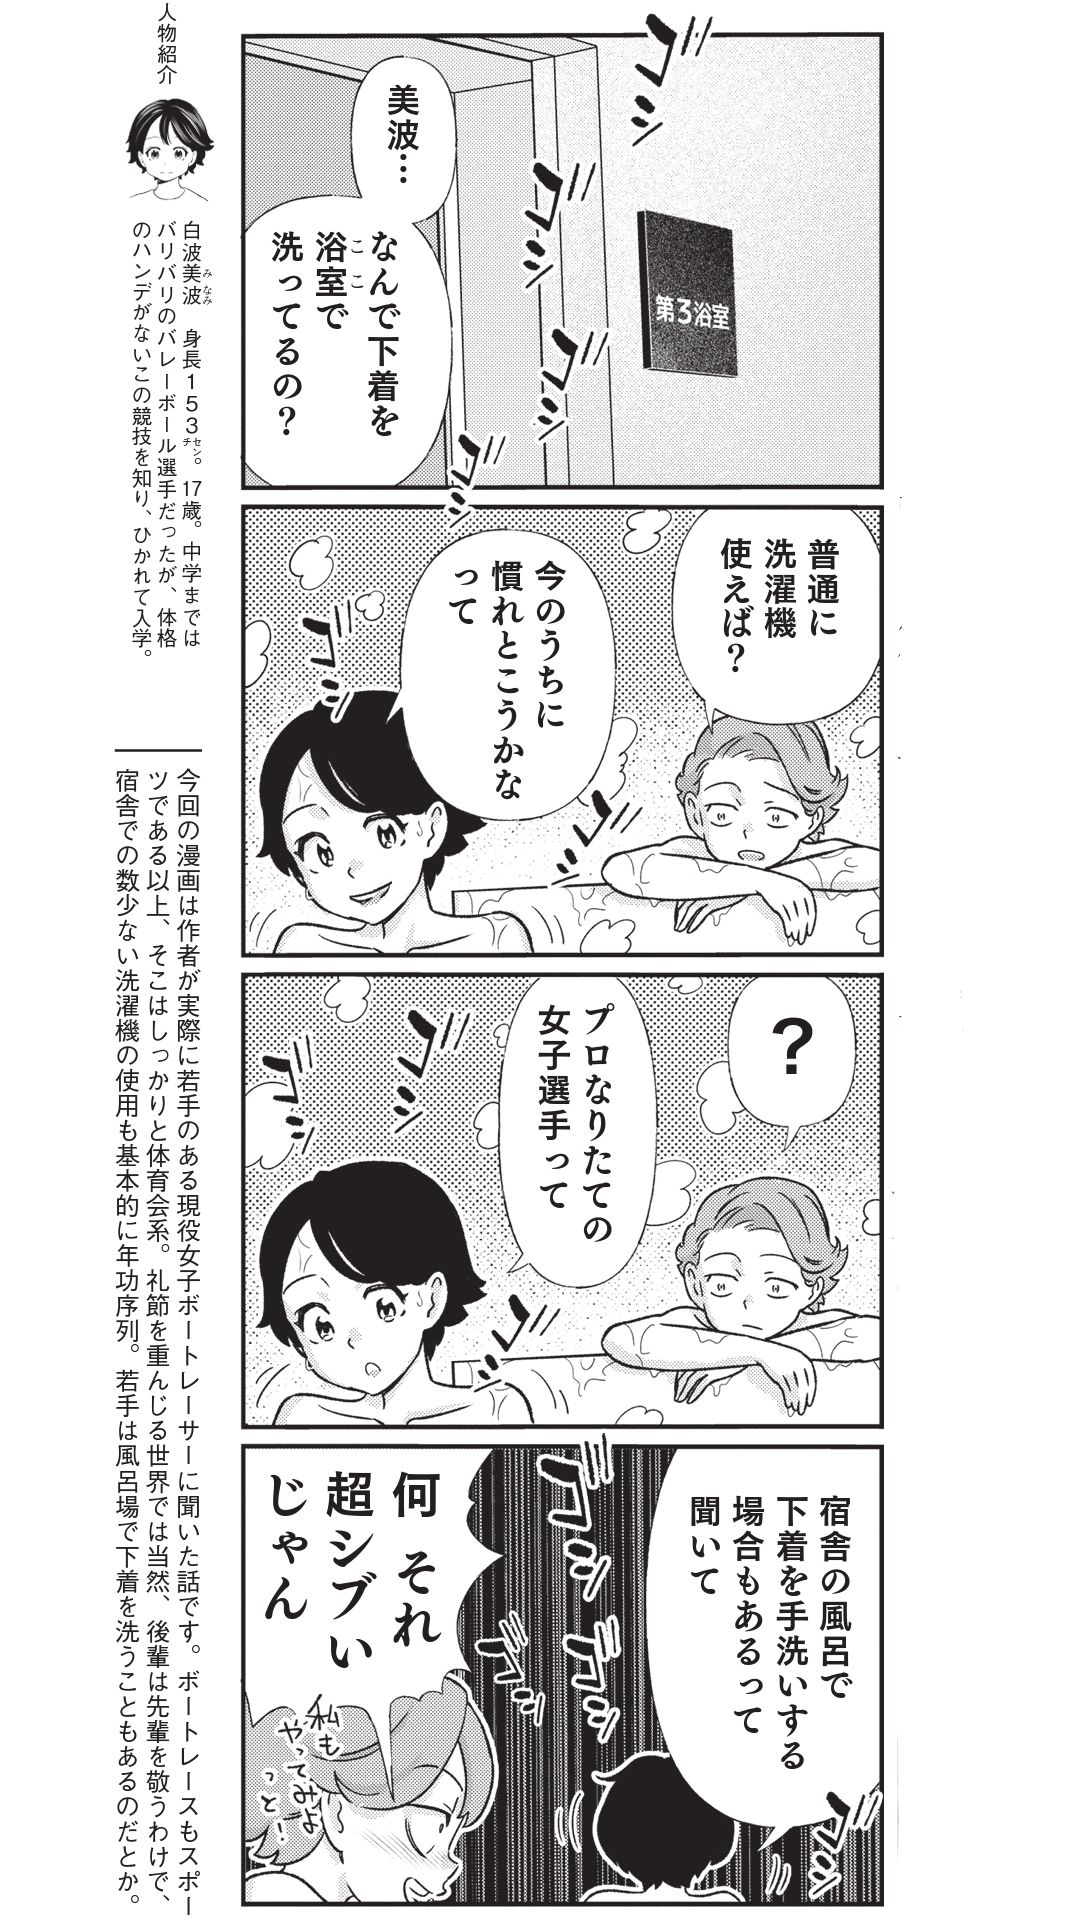 4コマ漫画『ボートレース訓練生・美波』こぼれ話「宿舎のお風呂で下着を洗濯」の画像